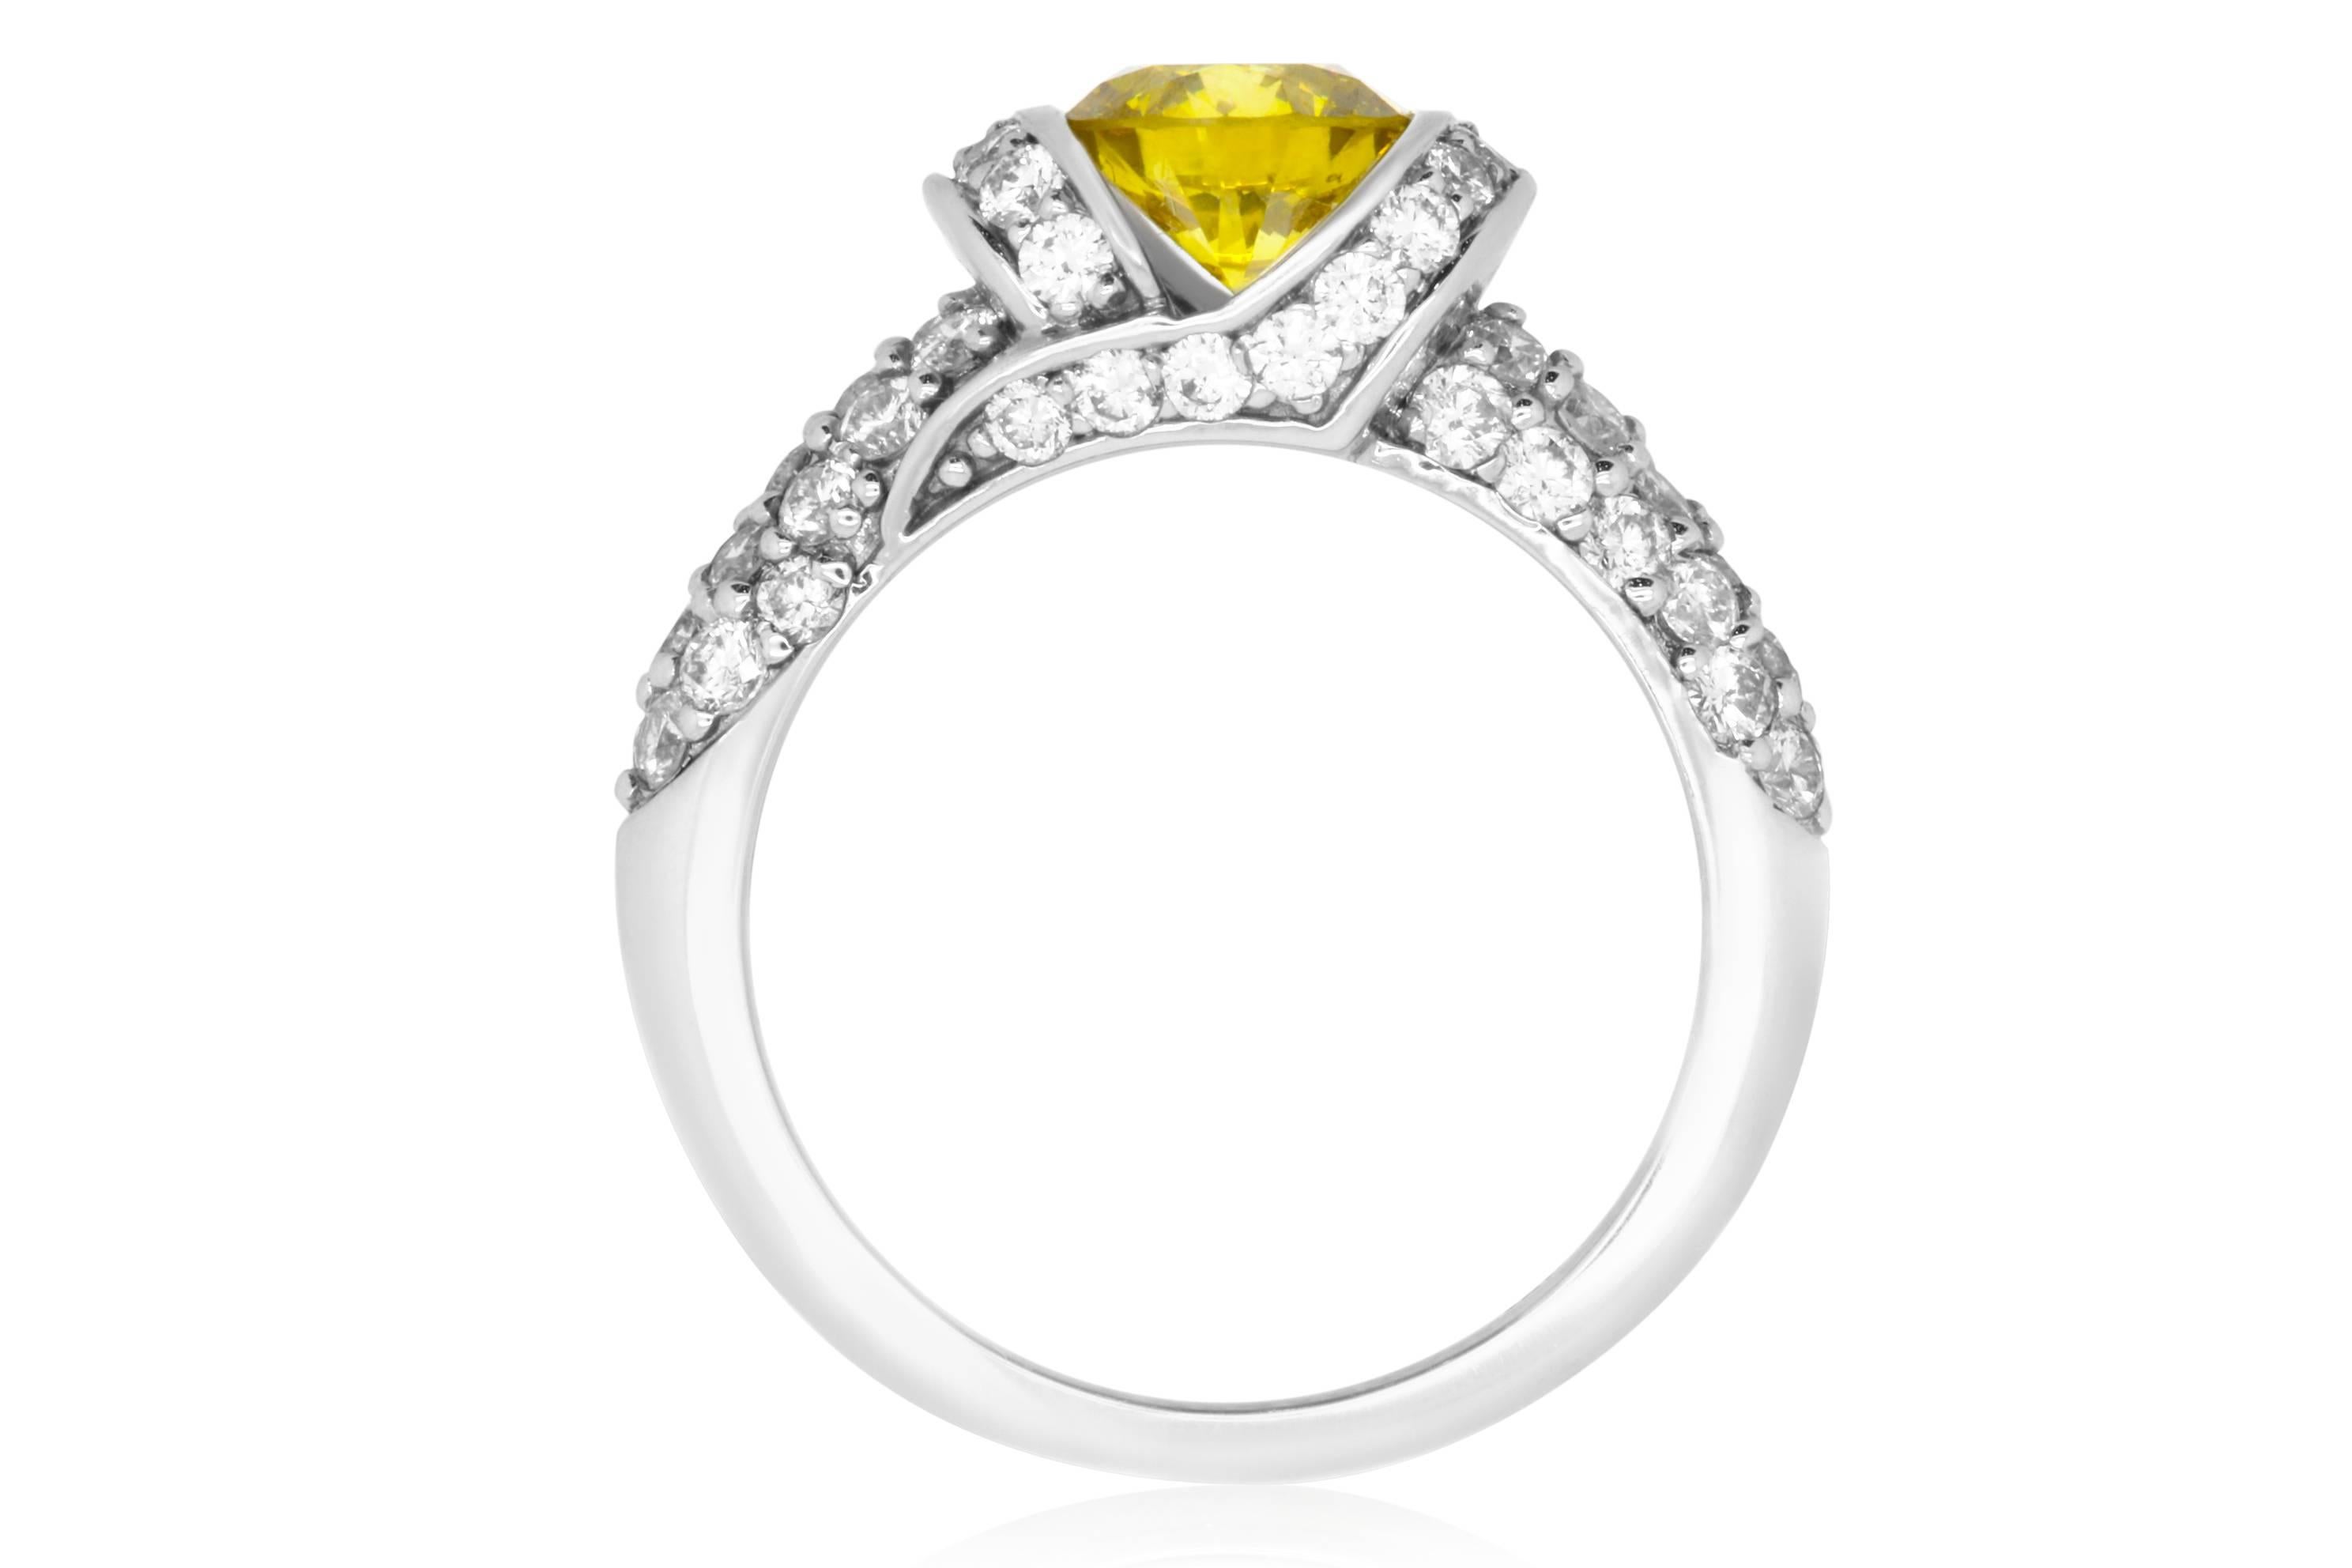 Contemporary 1.16 Carat Round Yellow Diamond and 1.32 Carat White Diamond Ring